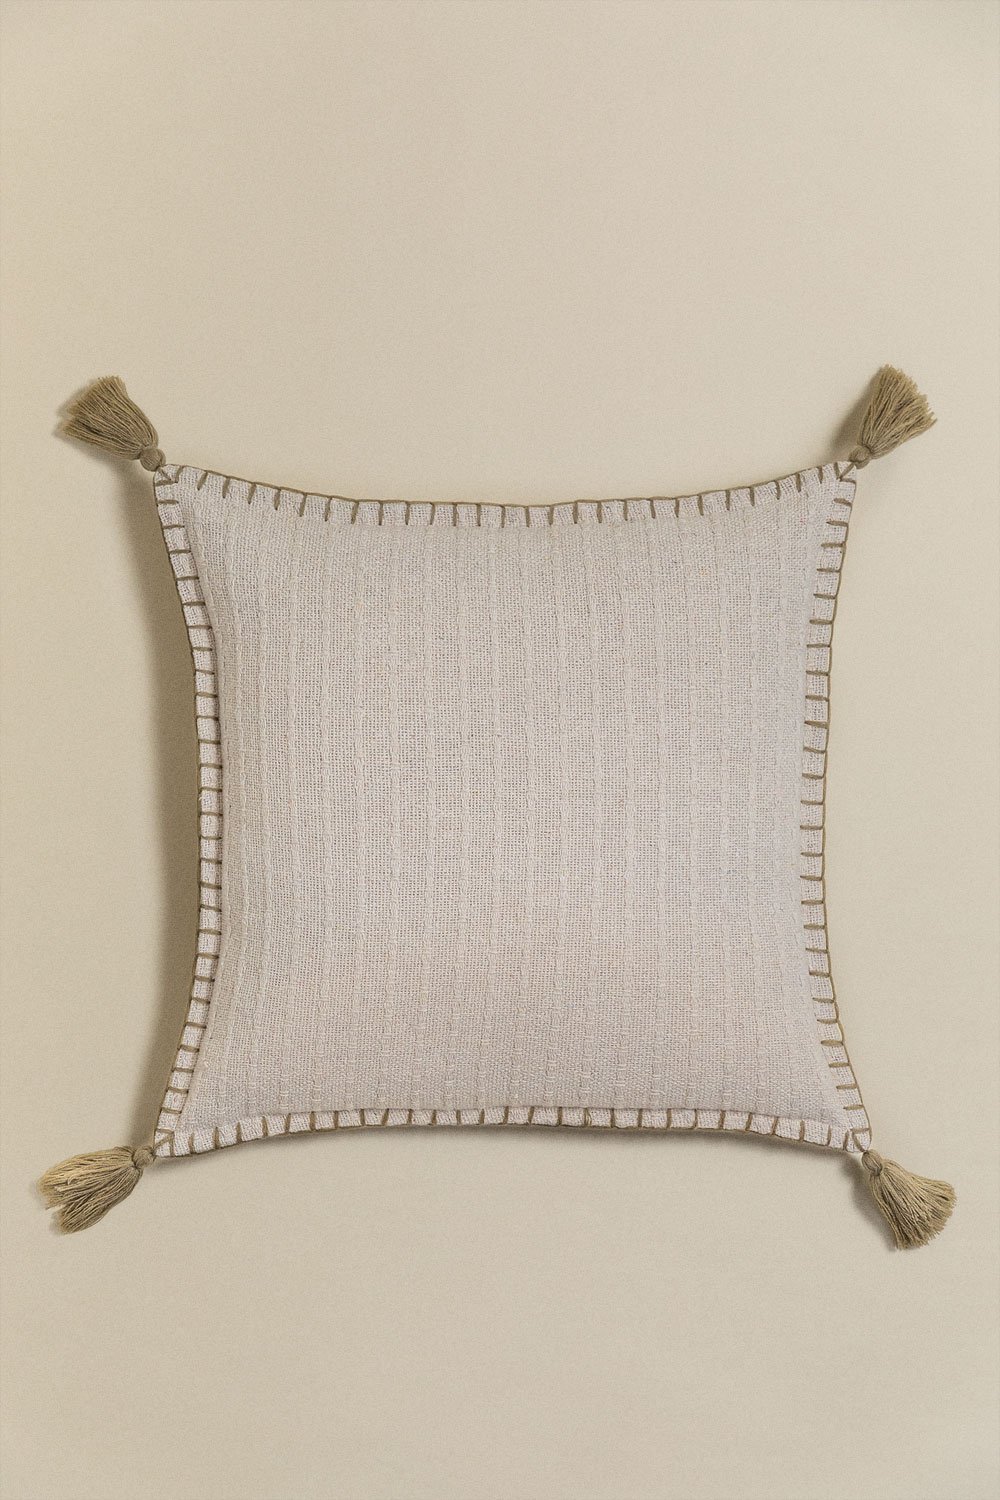 Gautier square cotton & linen cushion (45x45 cm) , gallery image 1